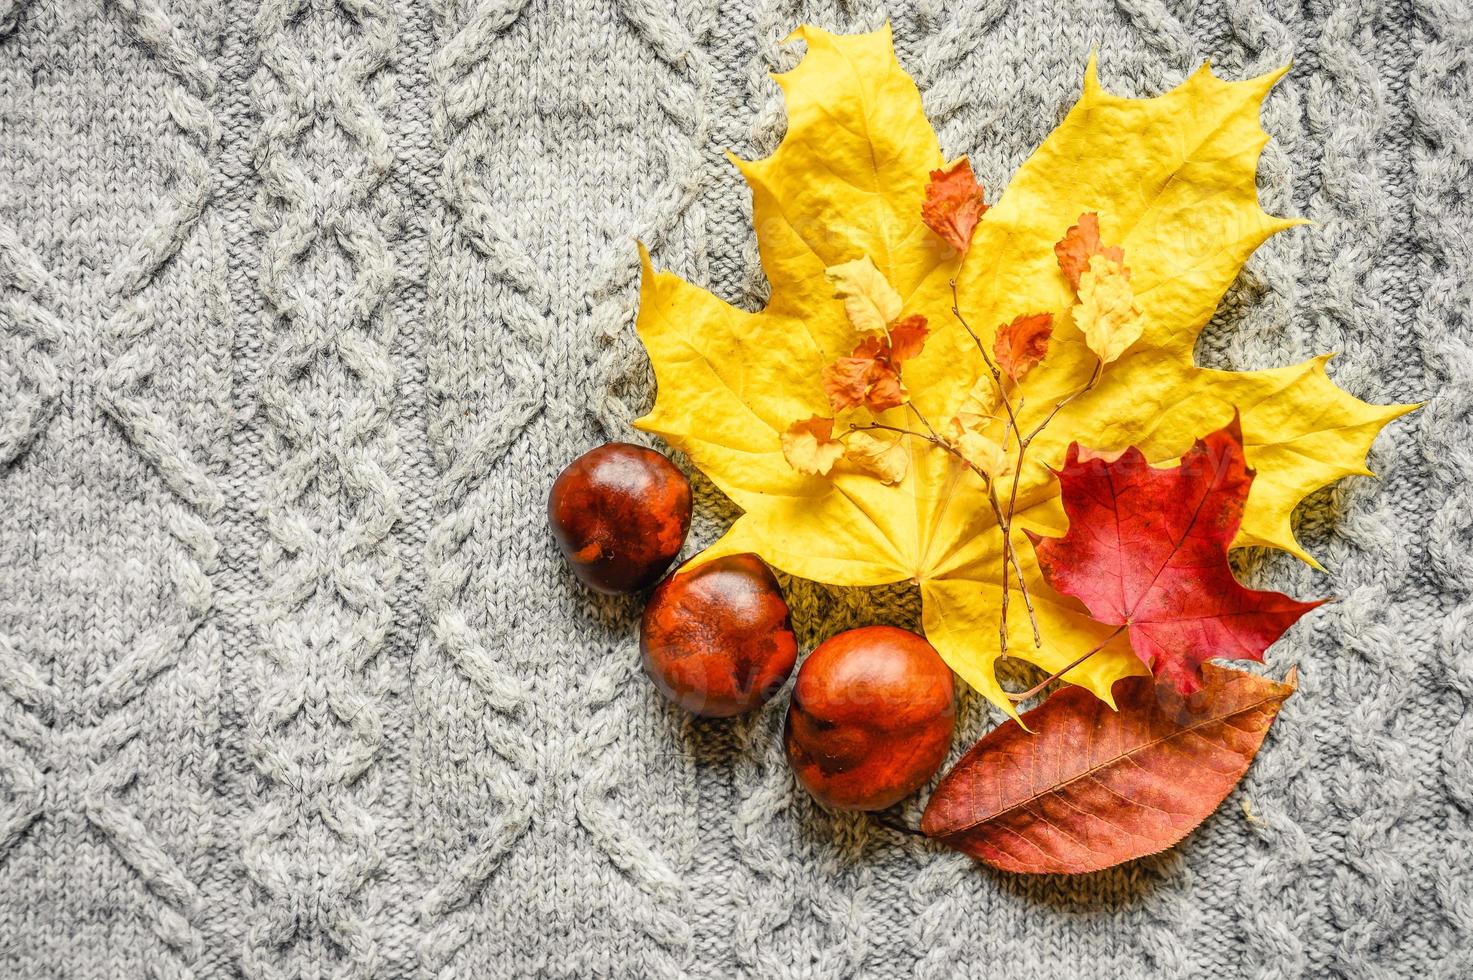 höstens gula och röda lönnlöv på bakgrunden av grå mysig stickad tröja foto